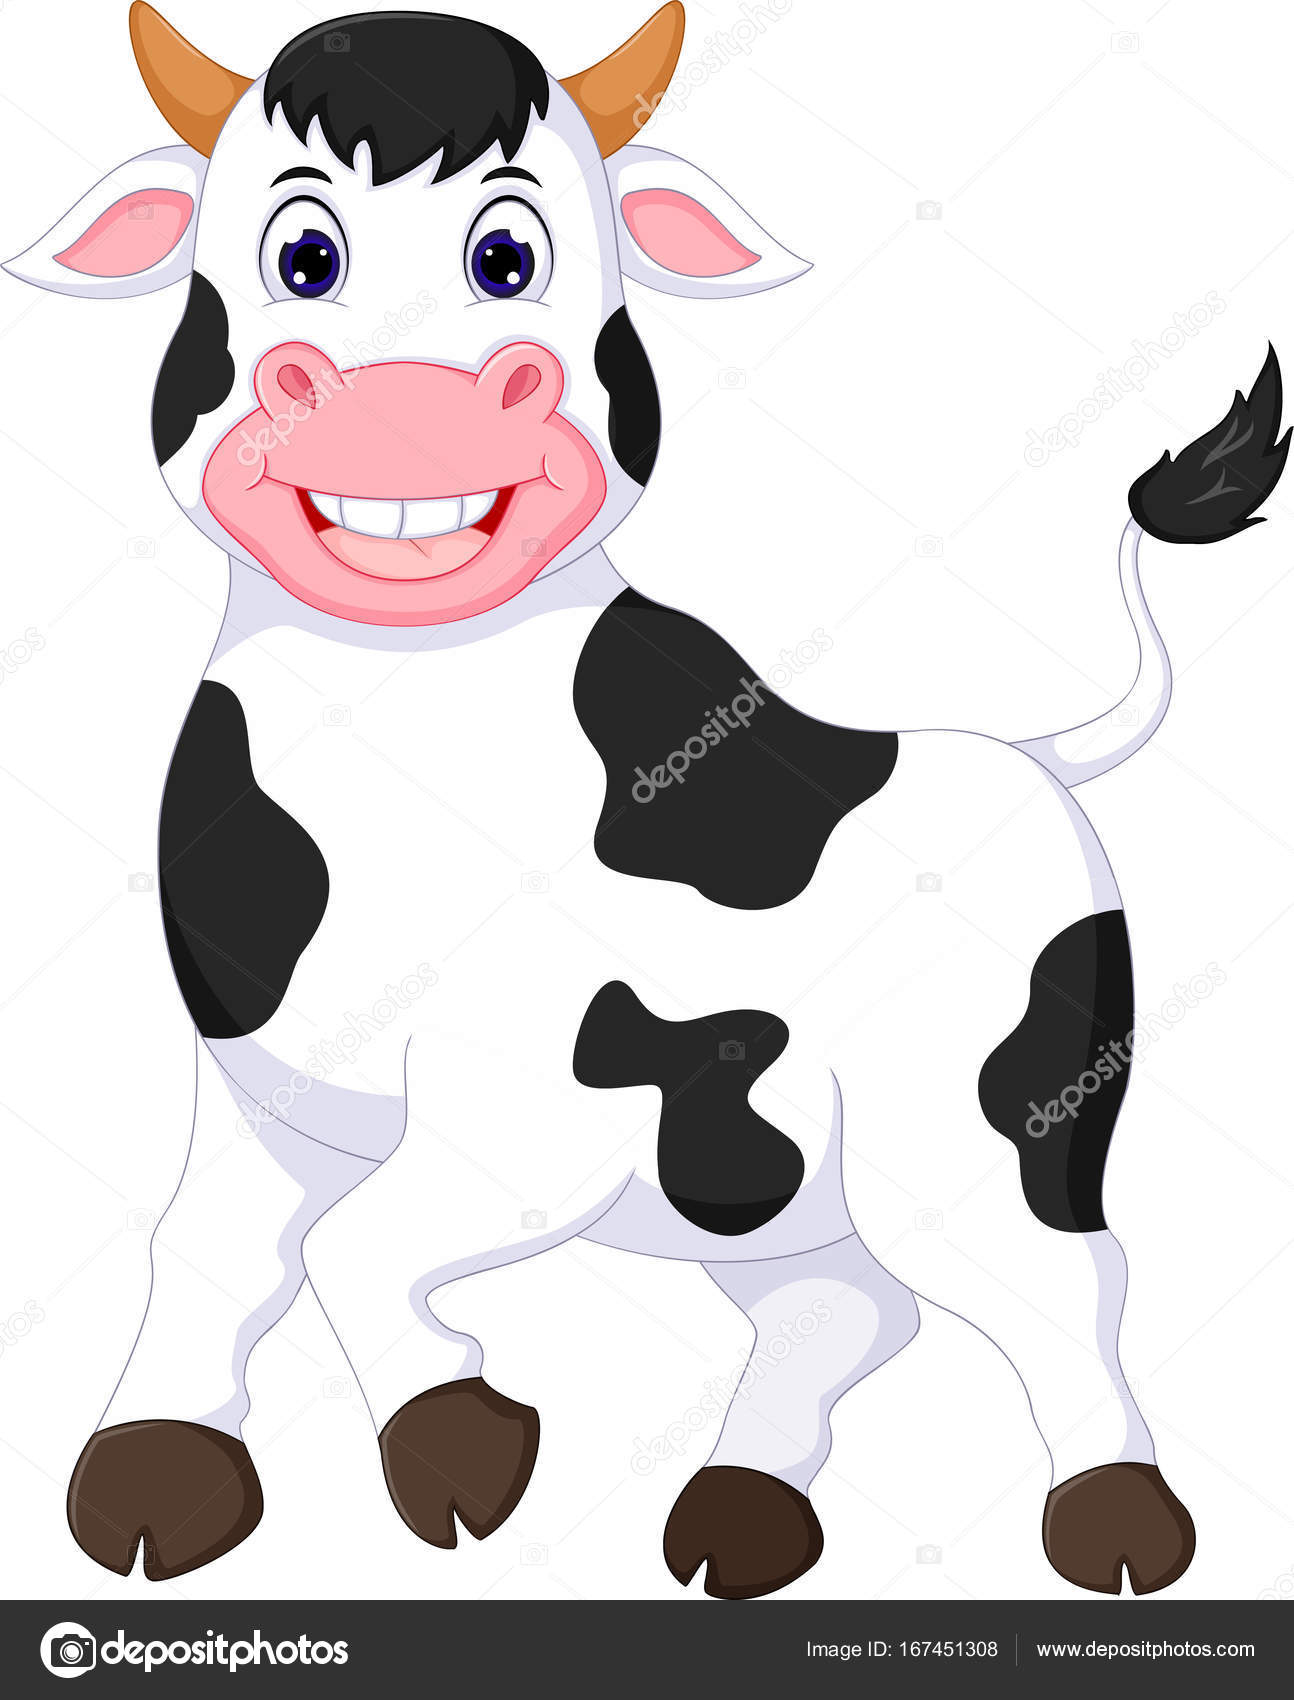 Cow cartoon Stock Photos, Royalty Free Cow cartoon Images | Depositphotos